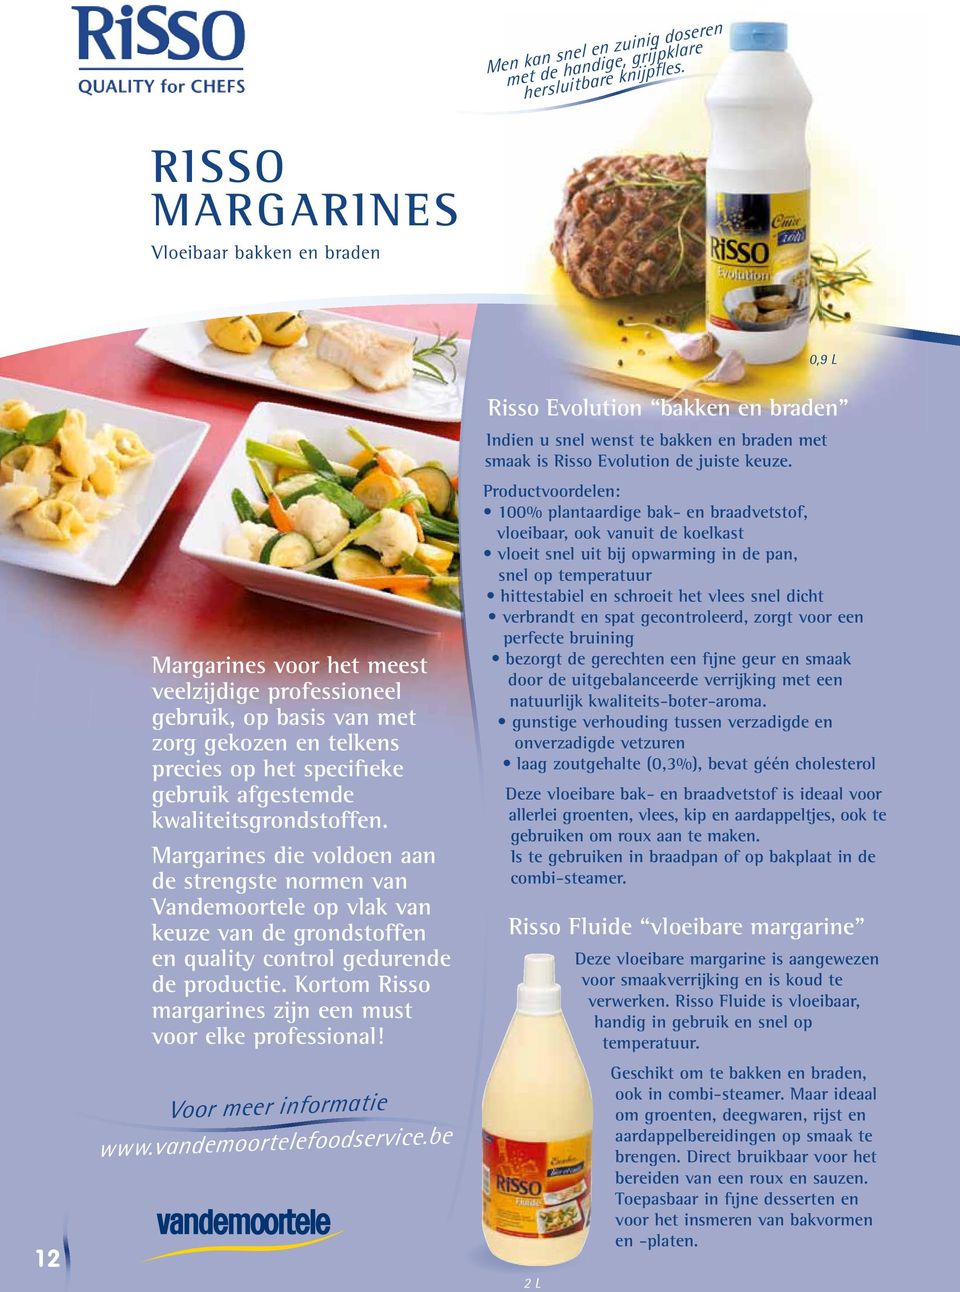 kwaliteitsgrondstoffen. Margarines die voldoen aan de strengste normen van Vandemoortele op vlak van keuze van de grondstoffen en quality control gedurende de productie.